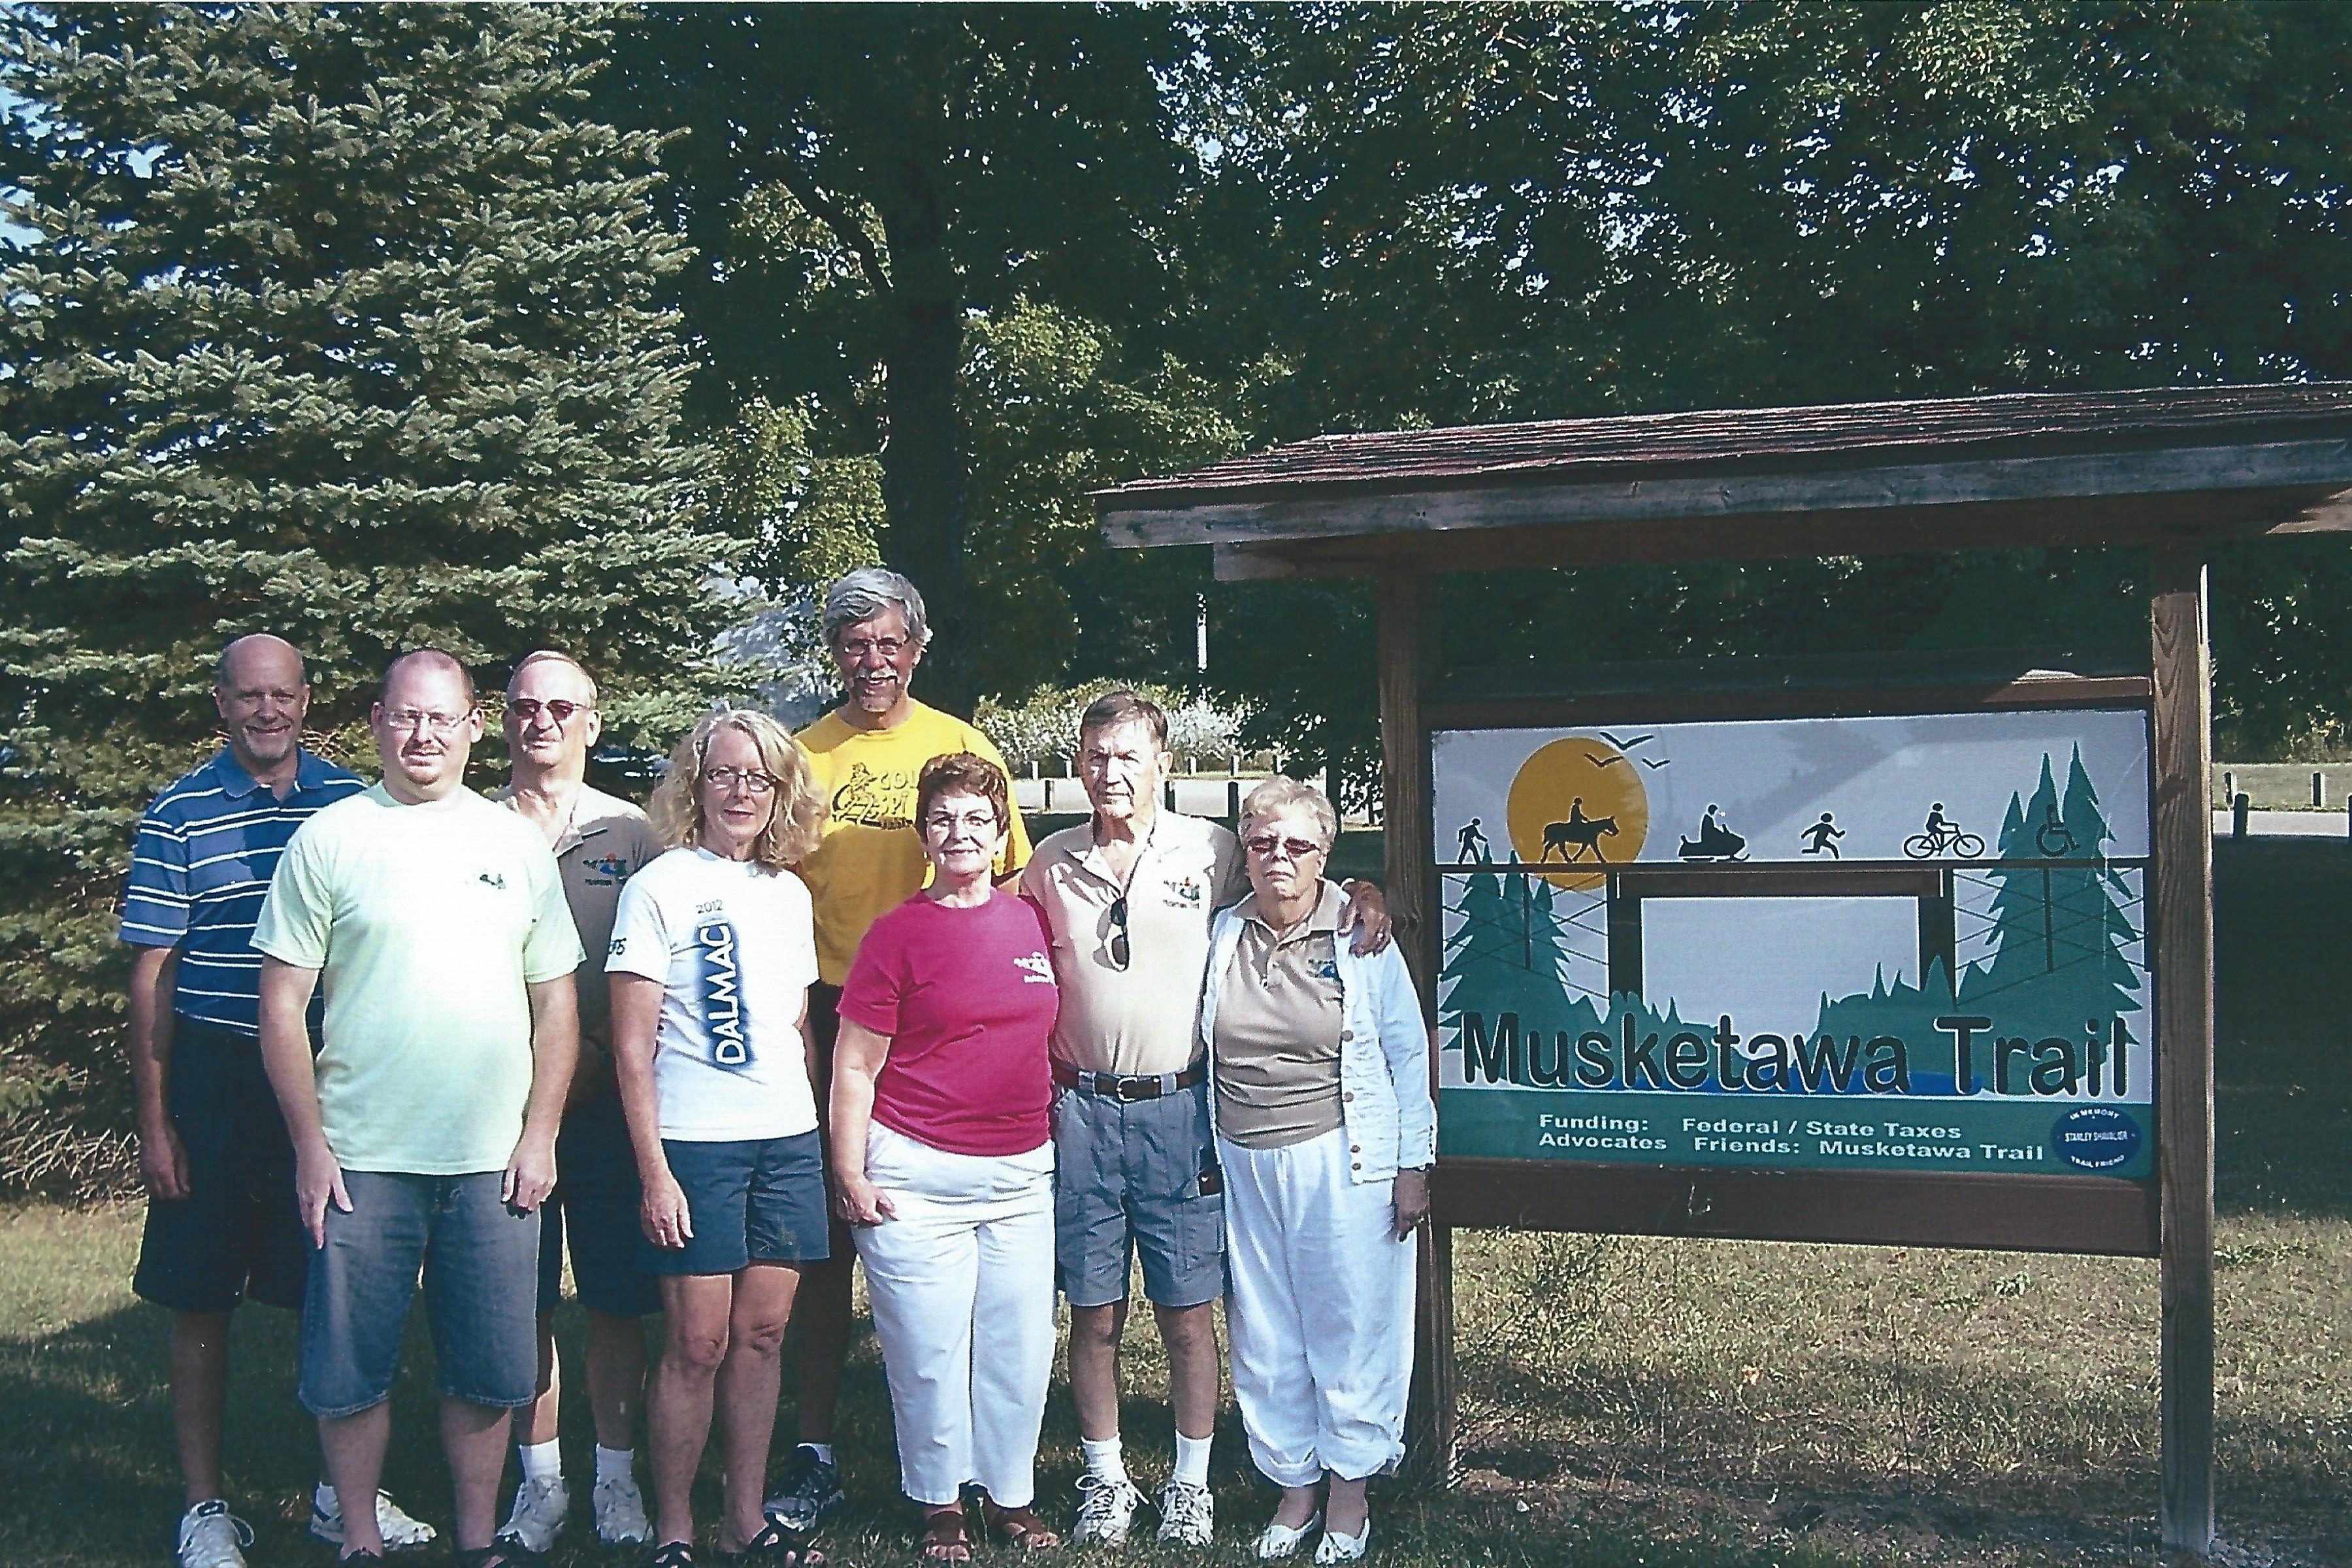 10. Current Board Members at Ravenna Trail Head